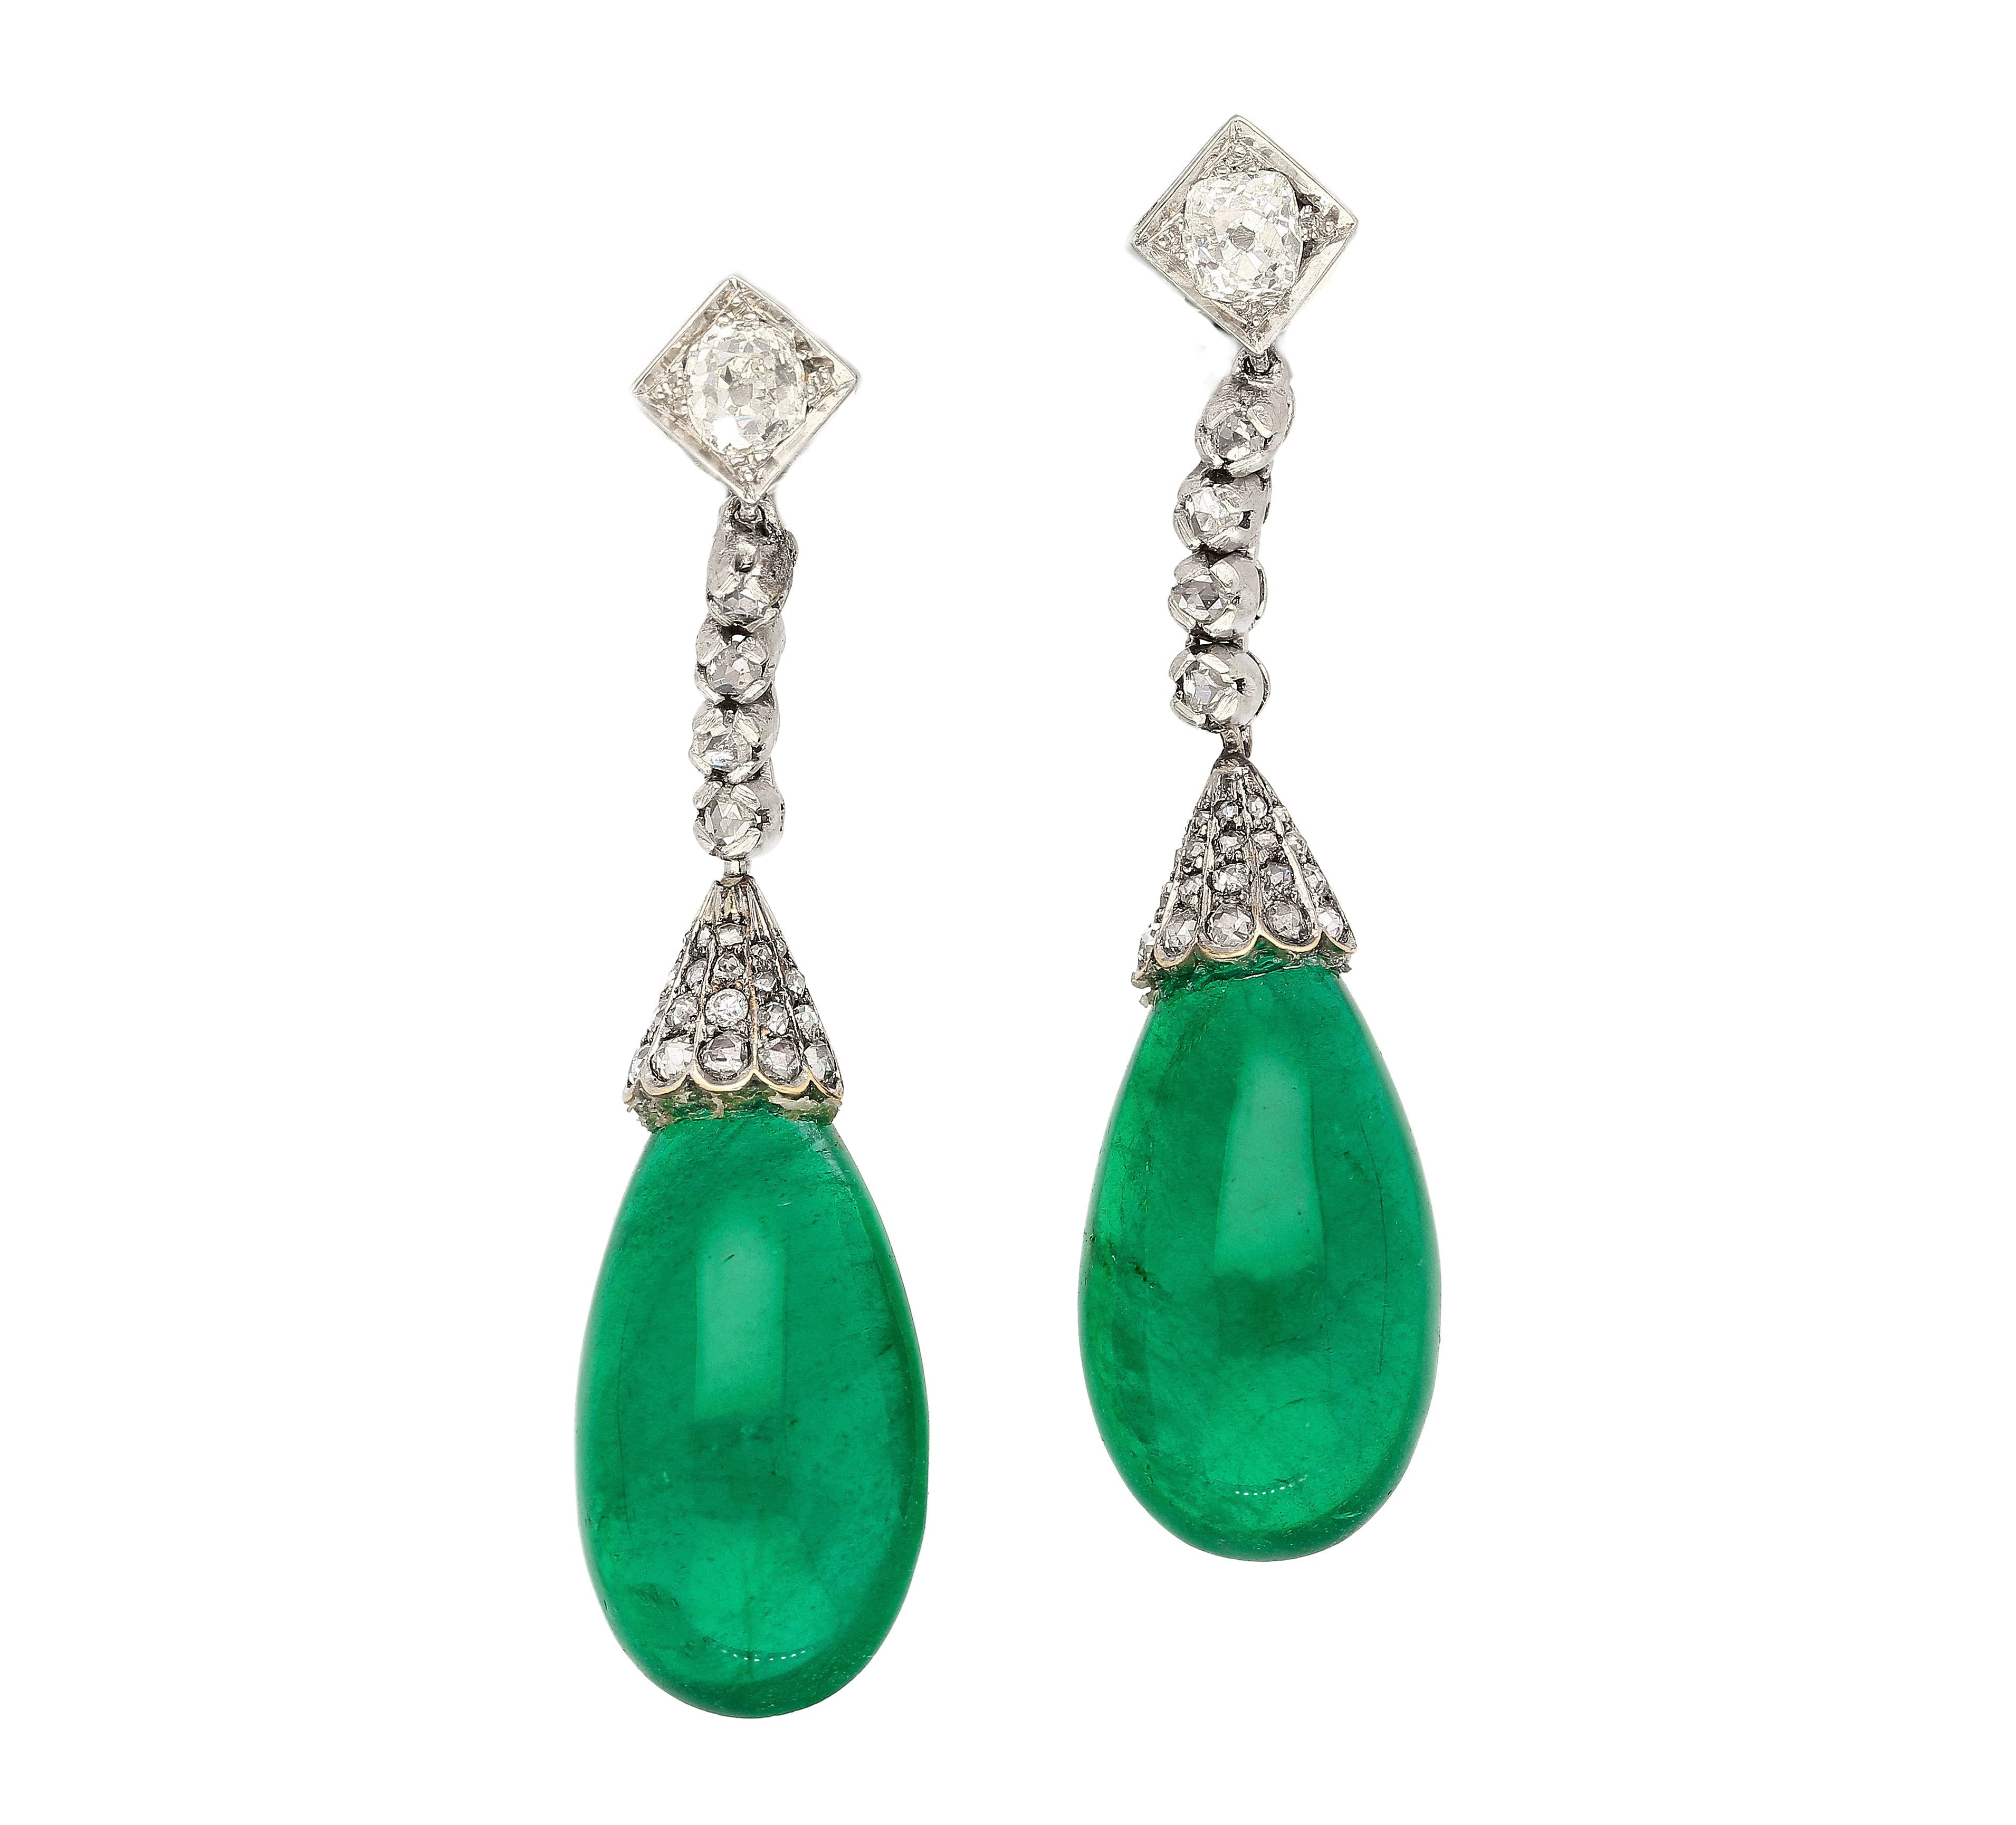 Art Deco Era 21 Carat Cabochon Pear Shape Emerald Drop Earrings | Circa 1940-Earrings-ASSAY